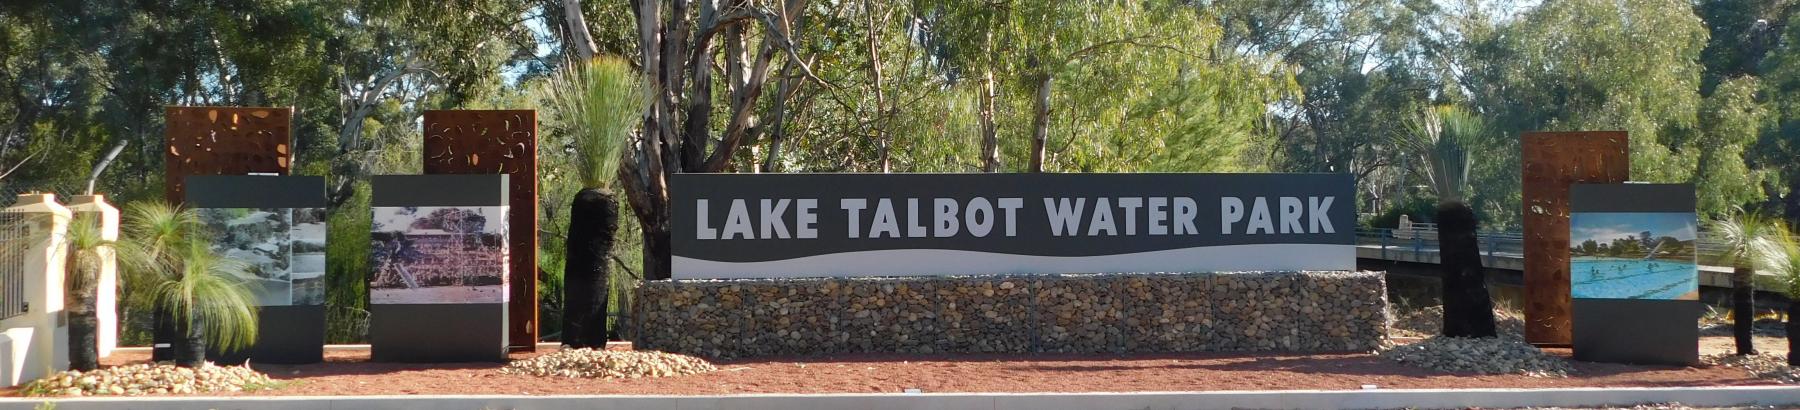 Lake Talbot Water Park